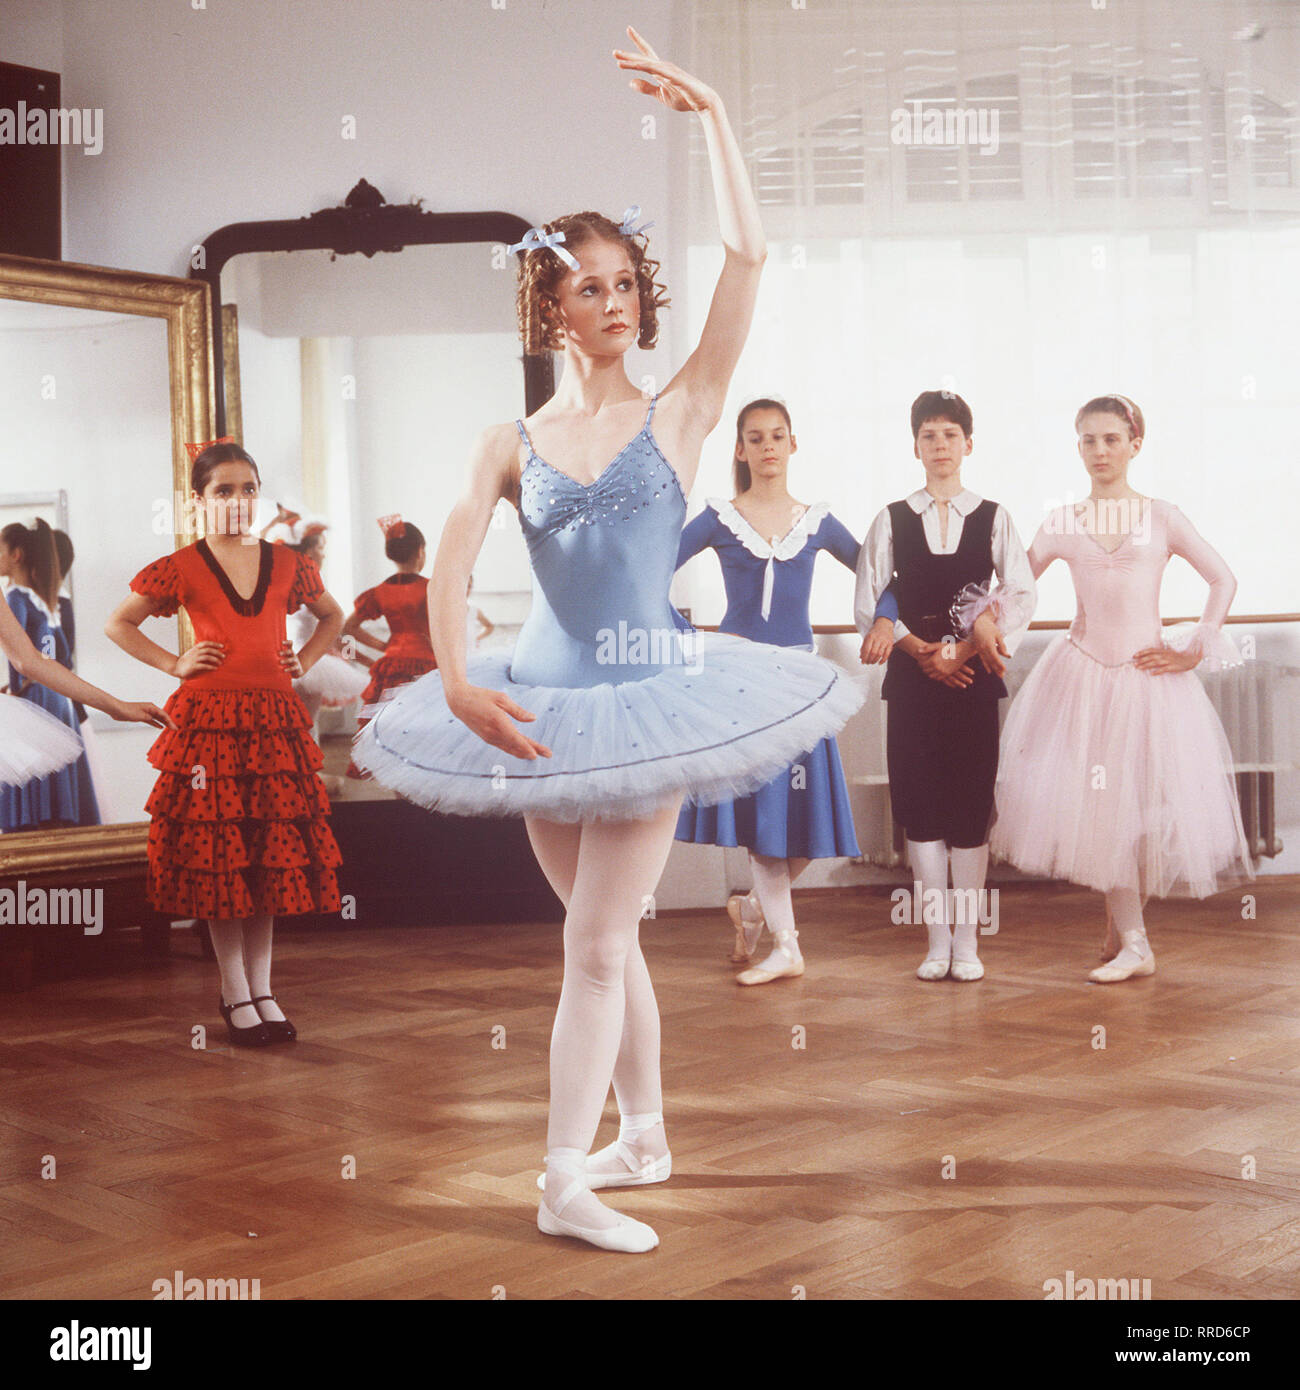 ANNA / TV-Serie von 1987 - Regie Frank Strecker / 1. / Die Folge Schülerin (SILVIA Anna SEIDEL, in einer Szen) hat eine grosse Begabung zur Ballett-Tänzerin. Doch dann wird sie bei einem Unfall, daß sie so verletzt Arme und Beine bewegen kann nicht mehr. / 28929 / , 09DFAAnna1 / Überschrift : ANNA Banque D'Images